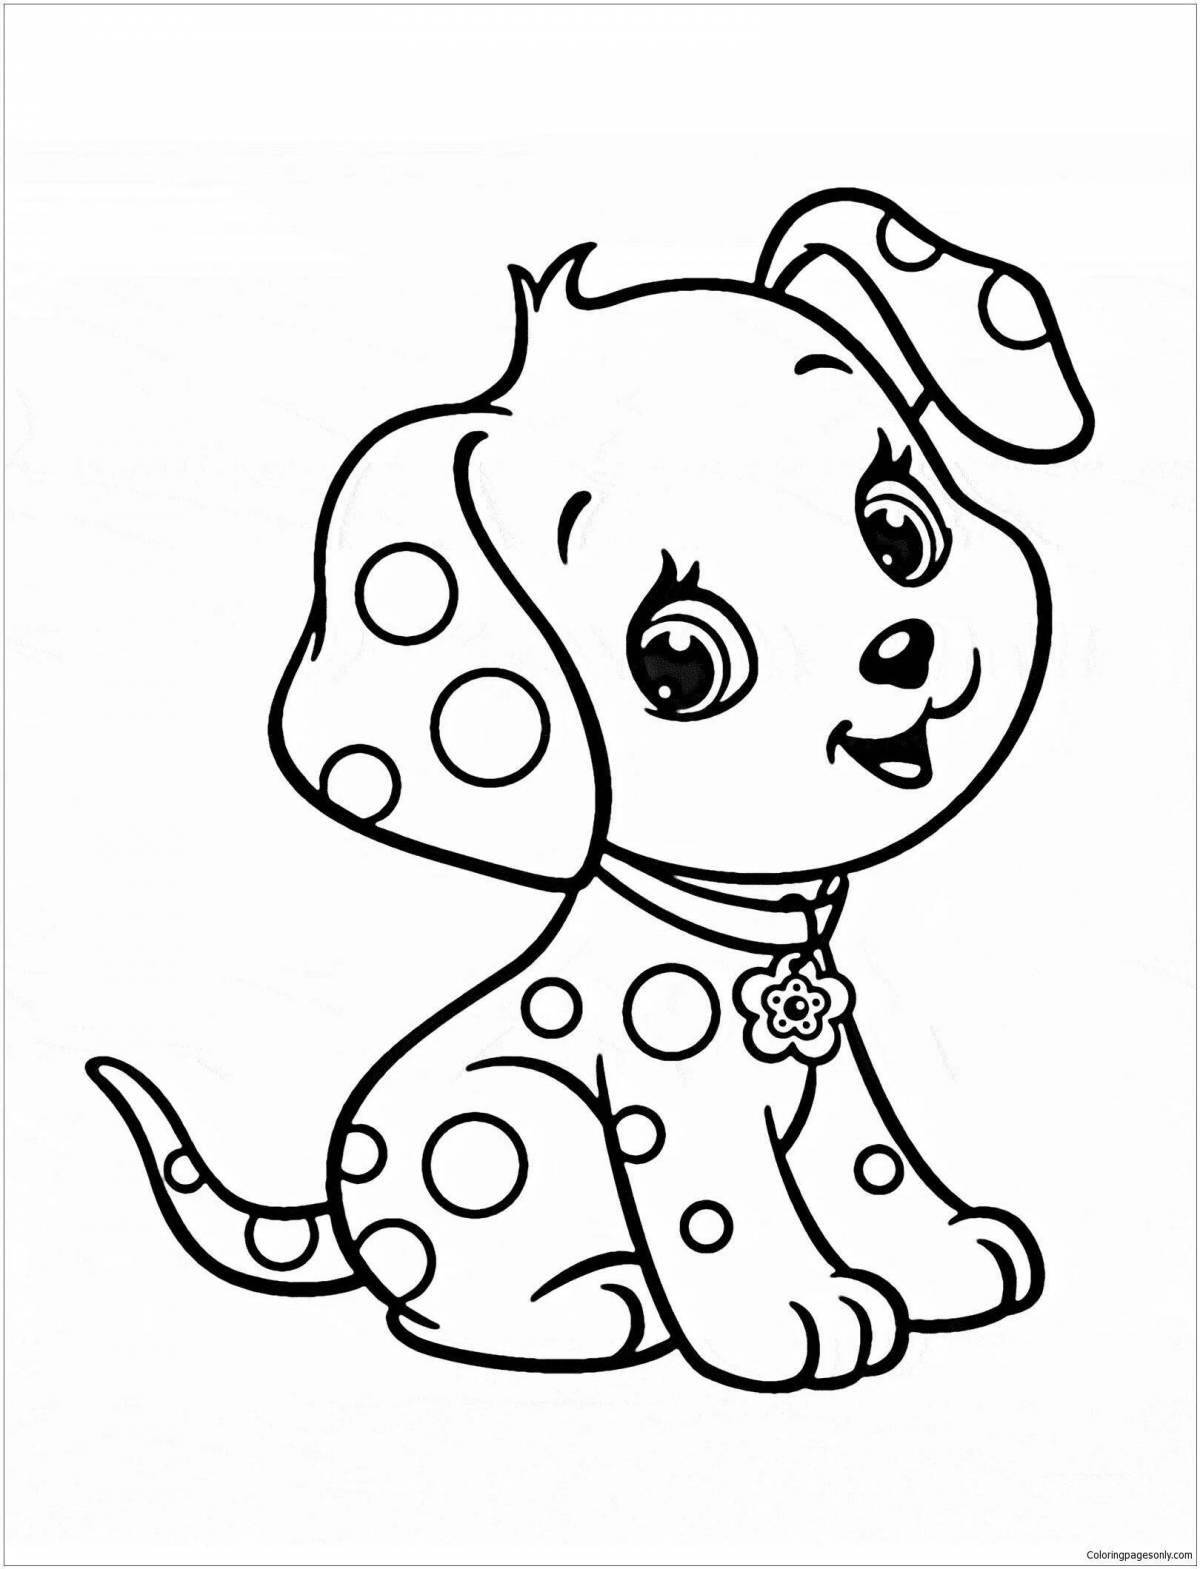 Анимированная раскраска собака для детей 2-3 лет